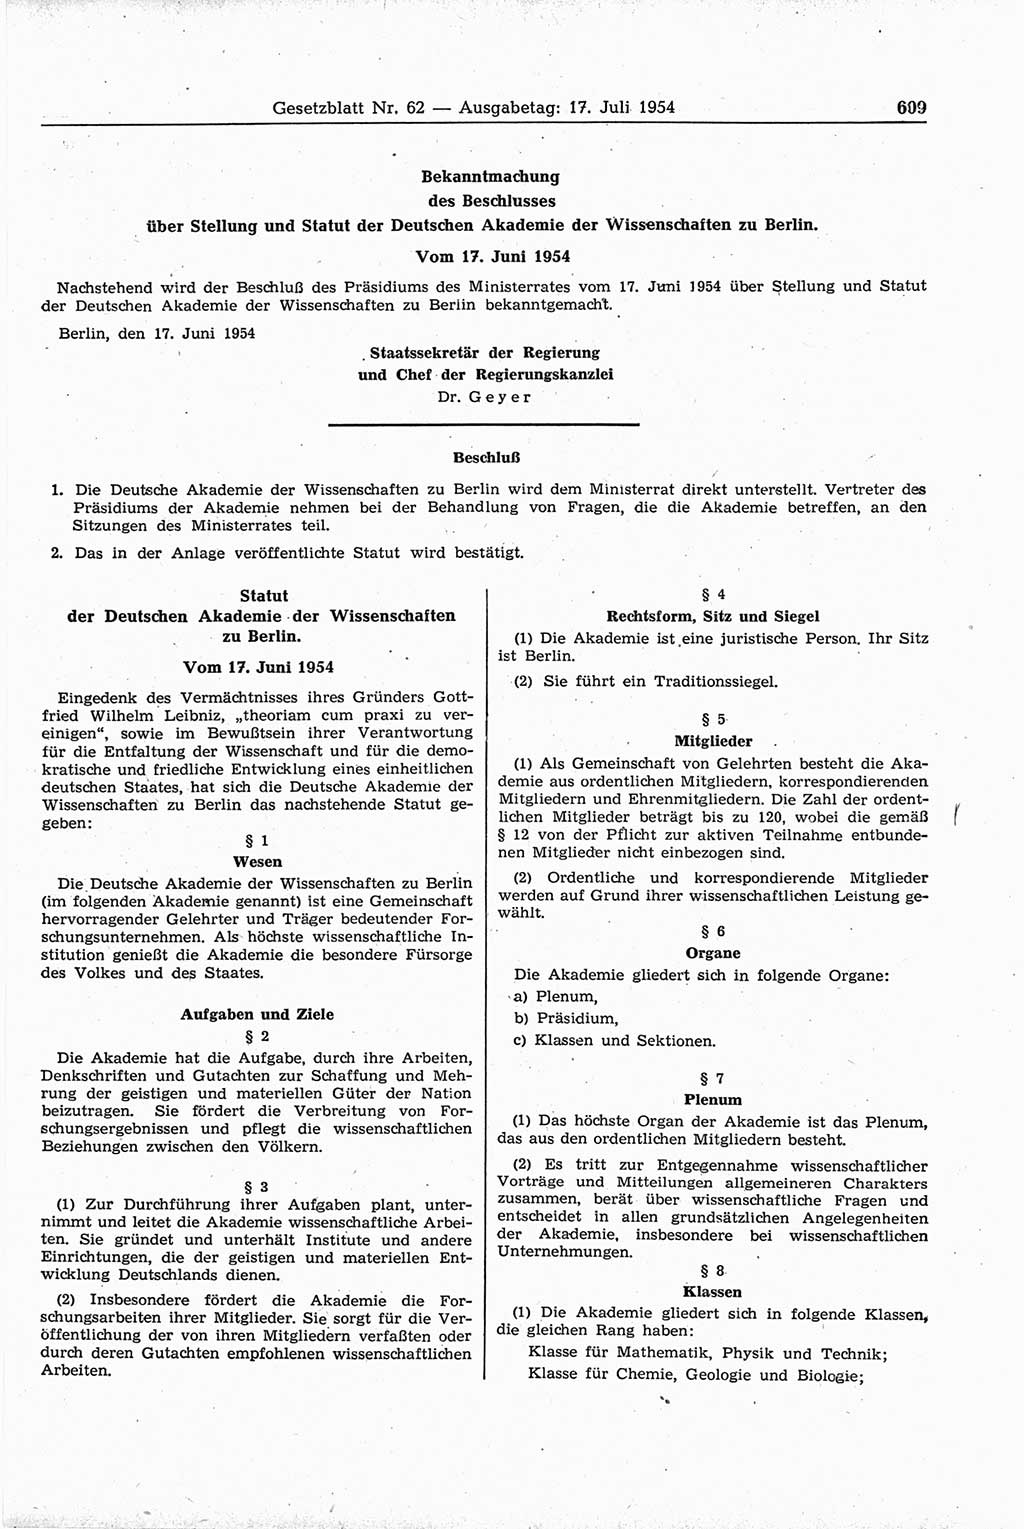 Gesetzblatt (GBl.) der Deutschen Demokratischen Republik (DDR) 1954, Seite 609 (GBl. DDR 1954, S. 609)